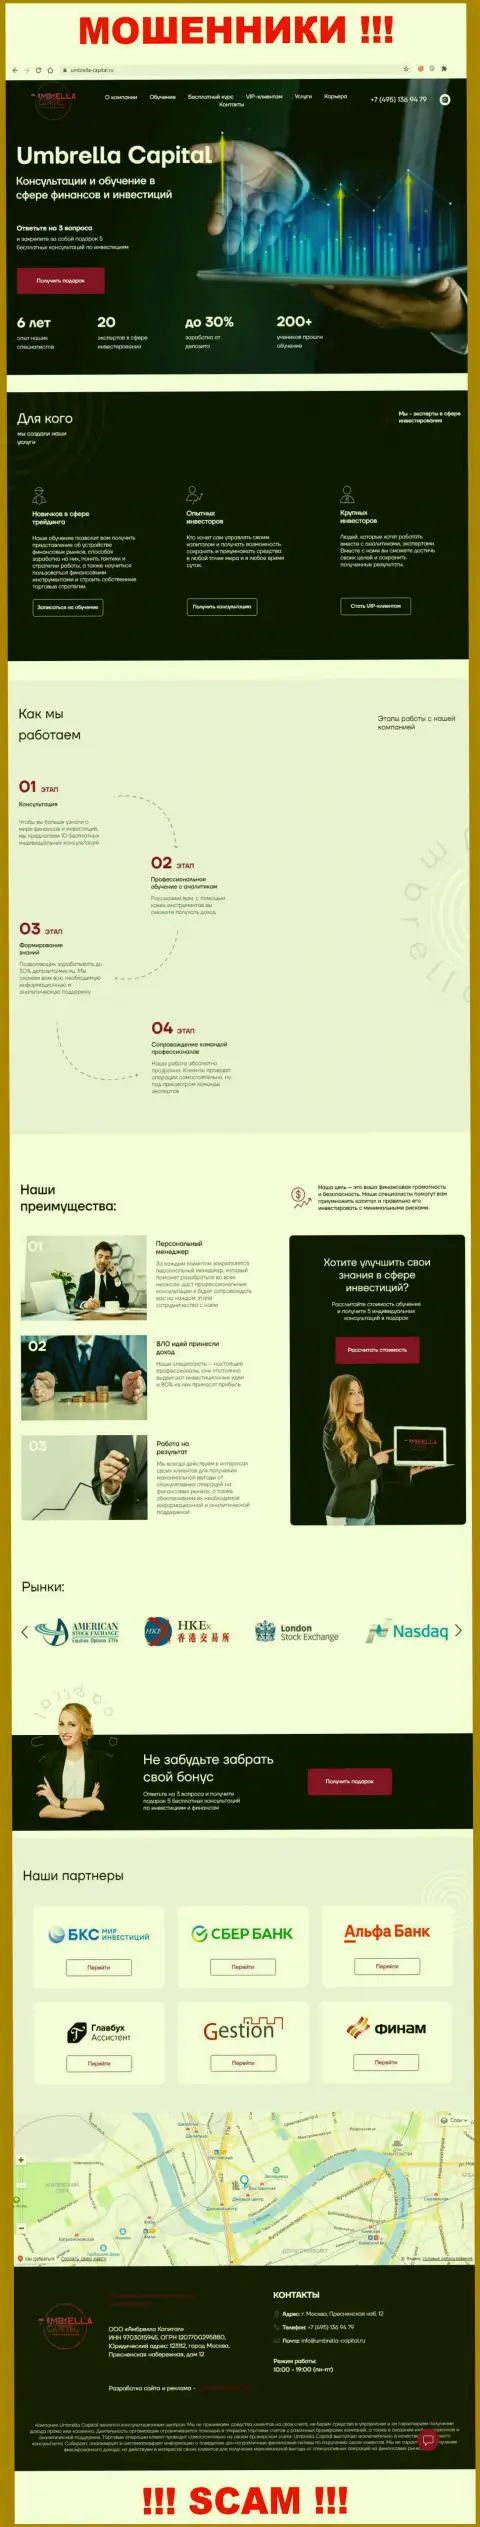 Вид официального веб-сайта противоправно действующей организации Umbrella Capital